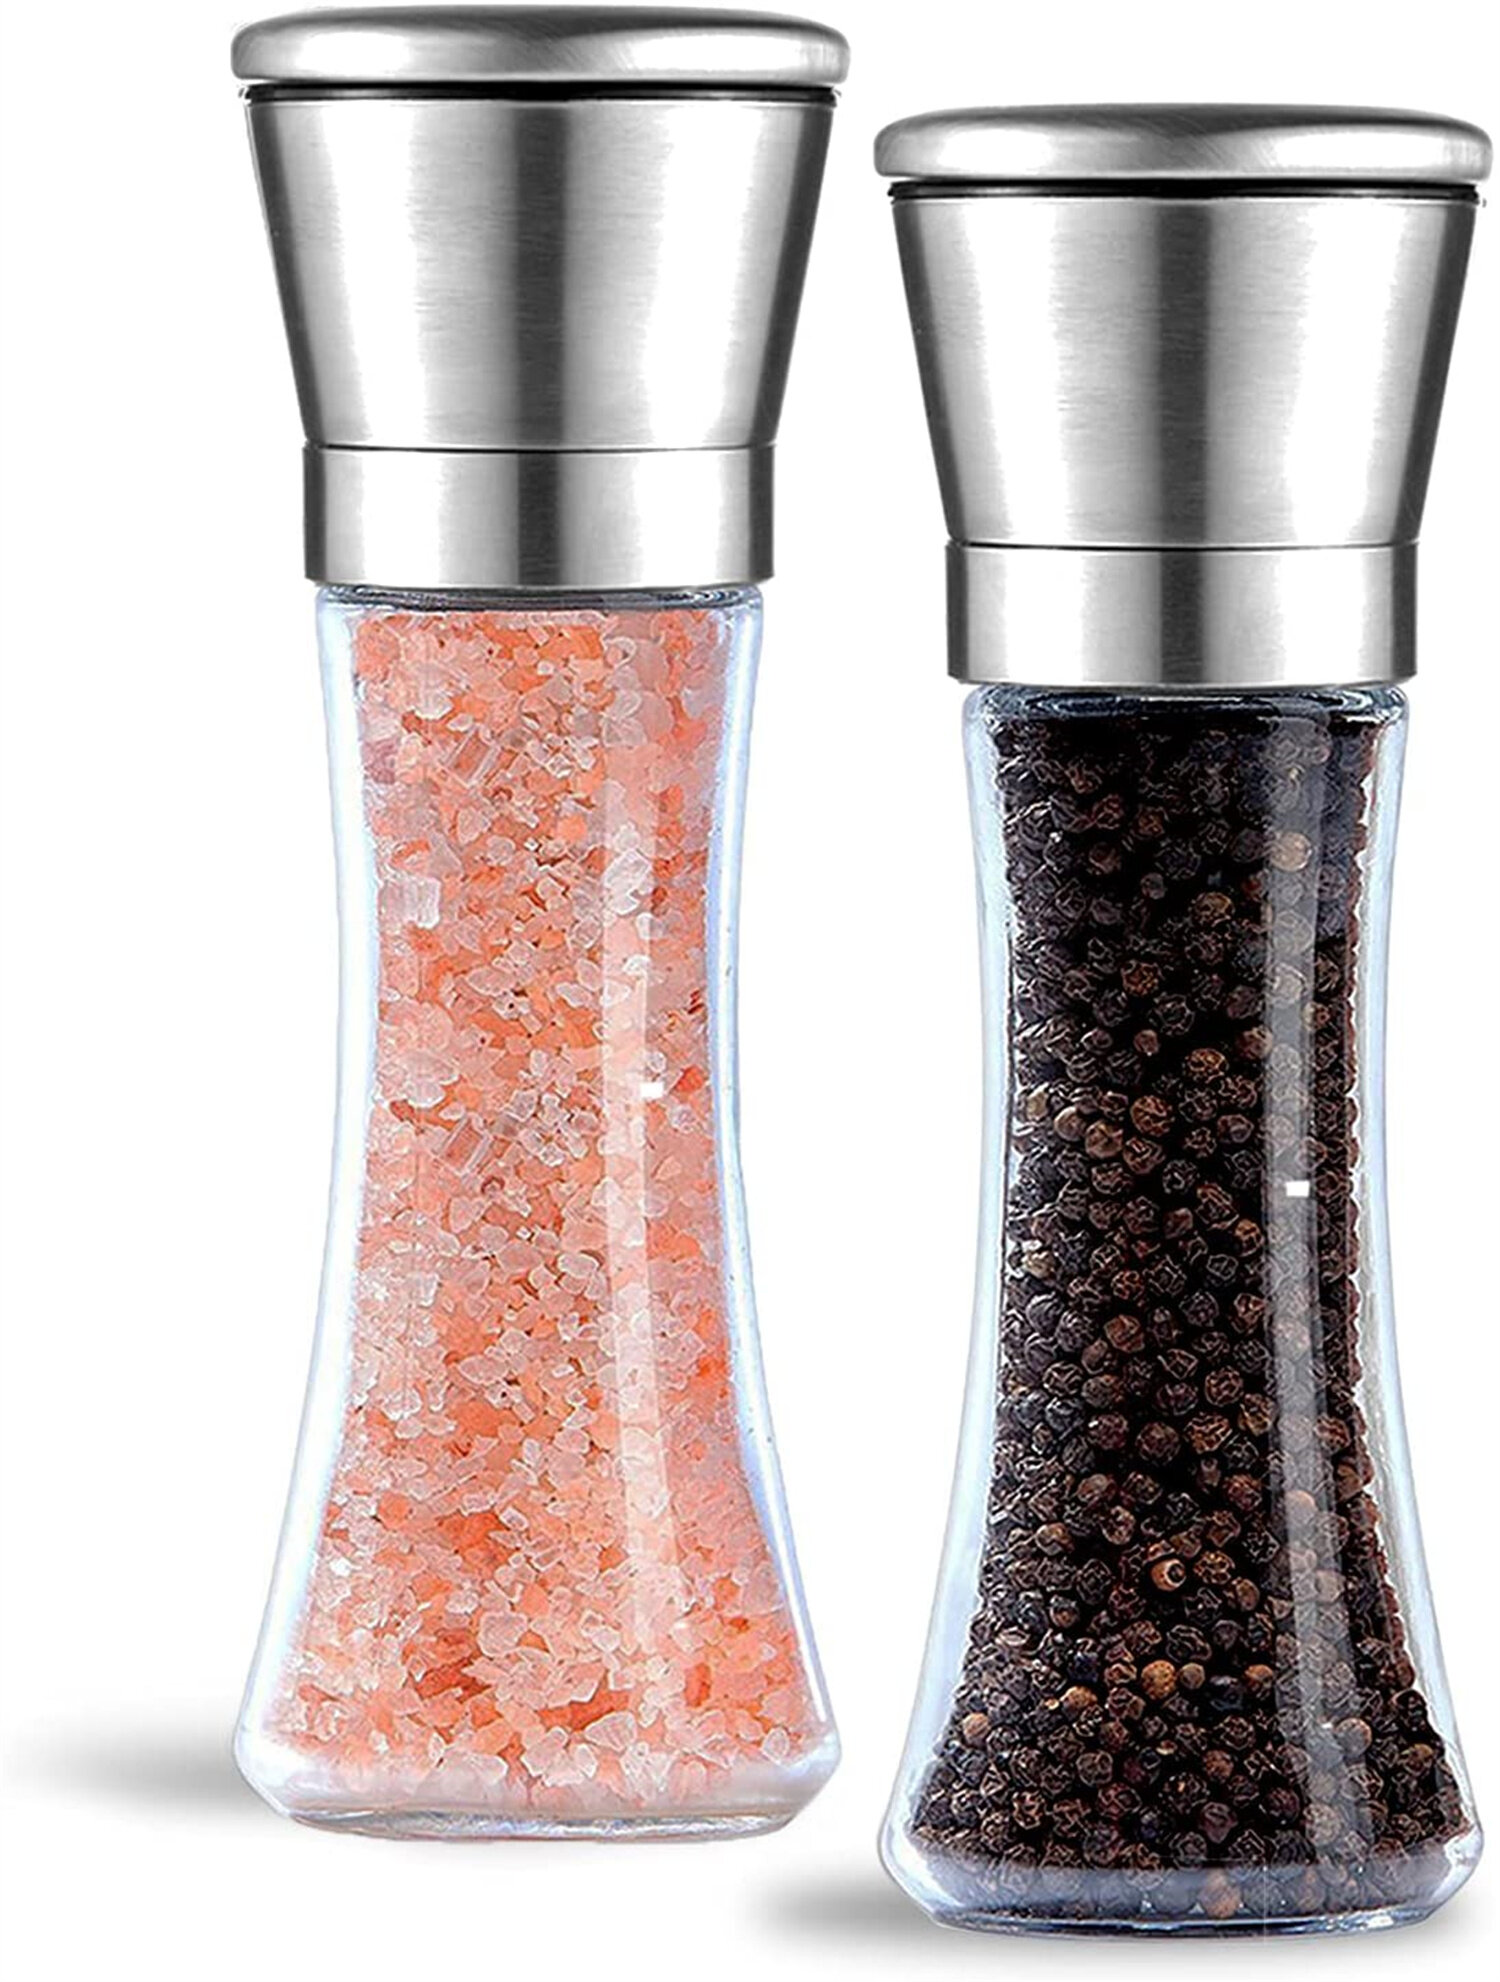 Orange Evelyne Salt Pepper Seasoning Glass Shaker with Stainless Steel Cover 2 pcs Pack Set 